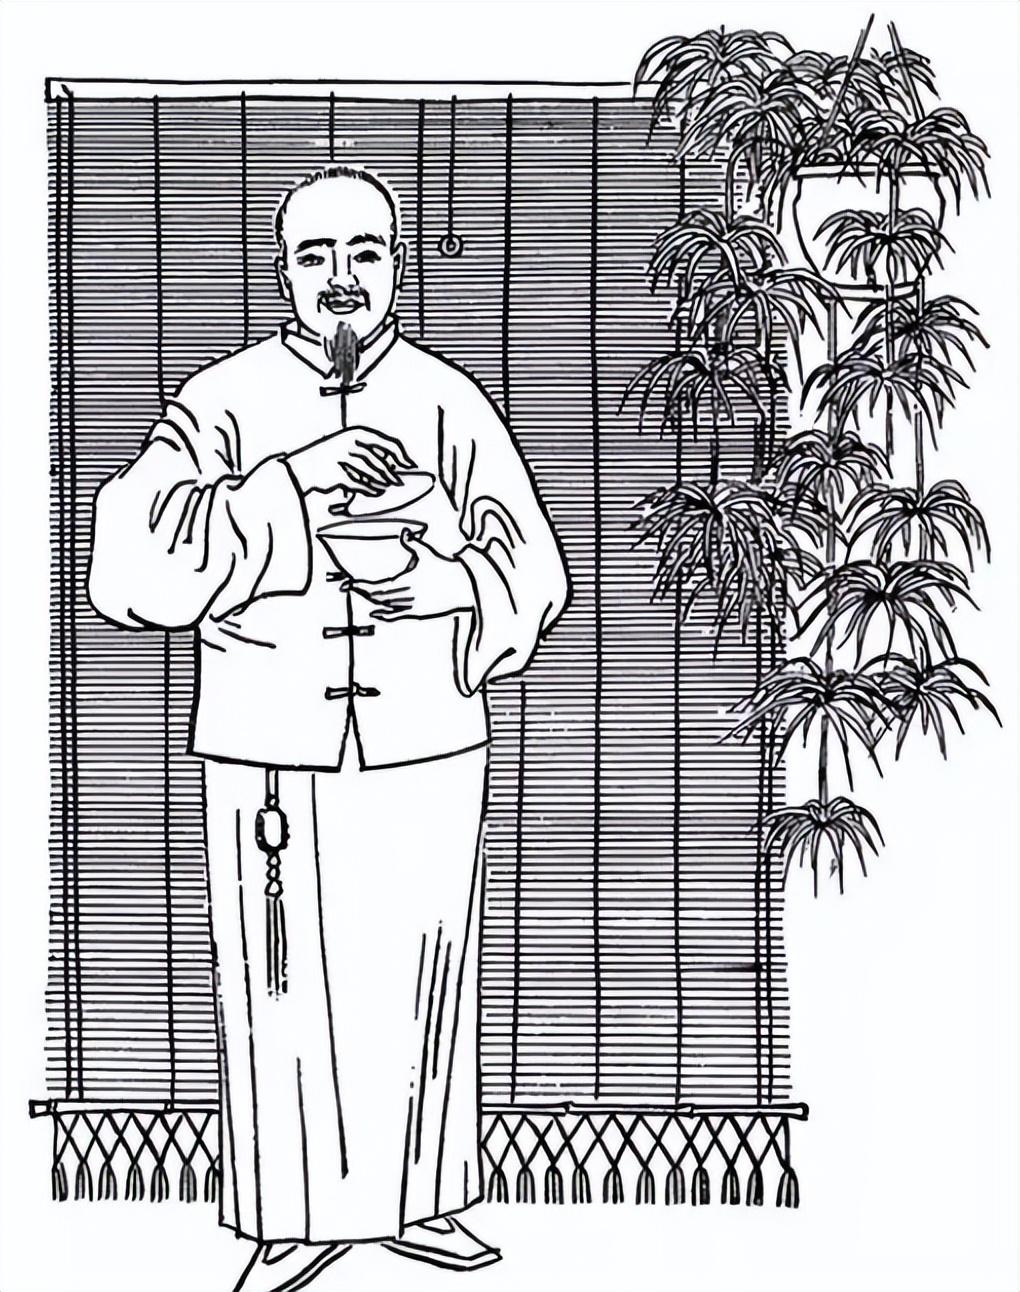 清朝巨富乔家：靠贩卖马草发家，有独特生意经，在1953年销声匿迹